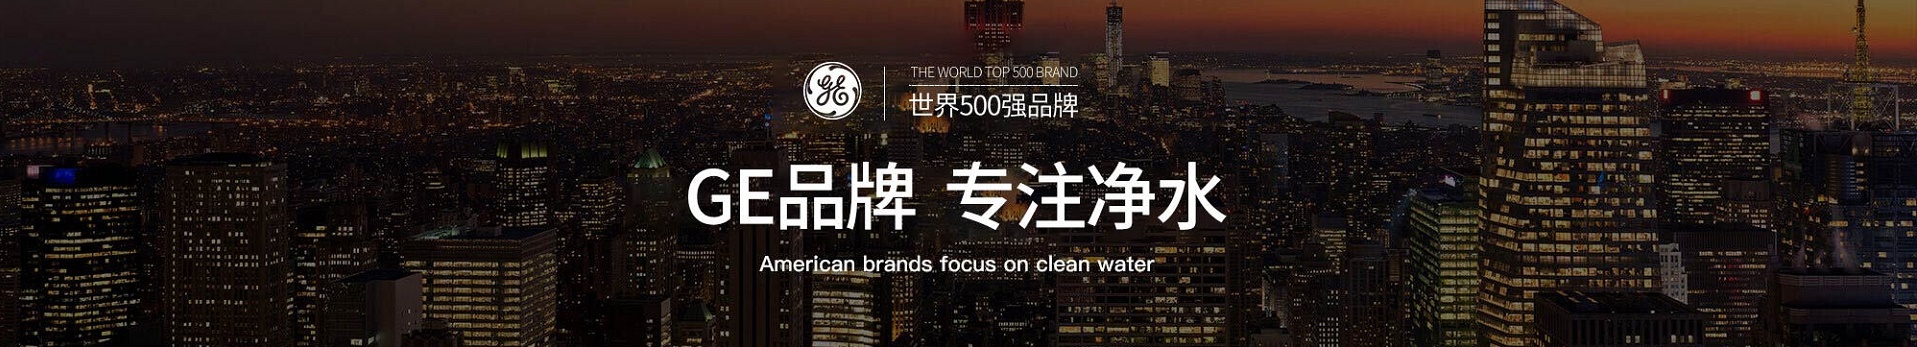 全球前十品牌新风